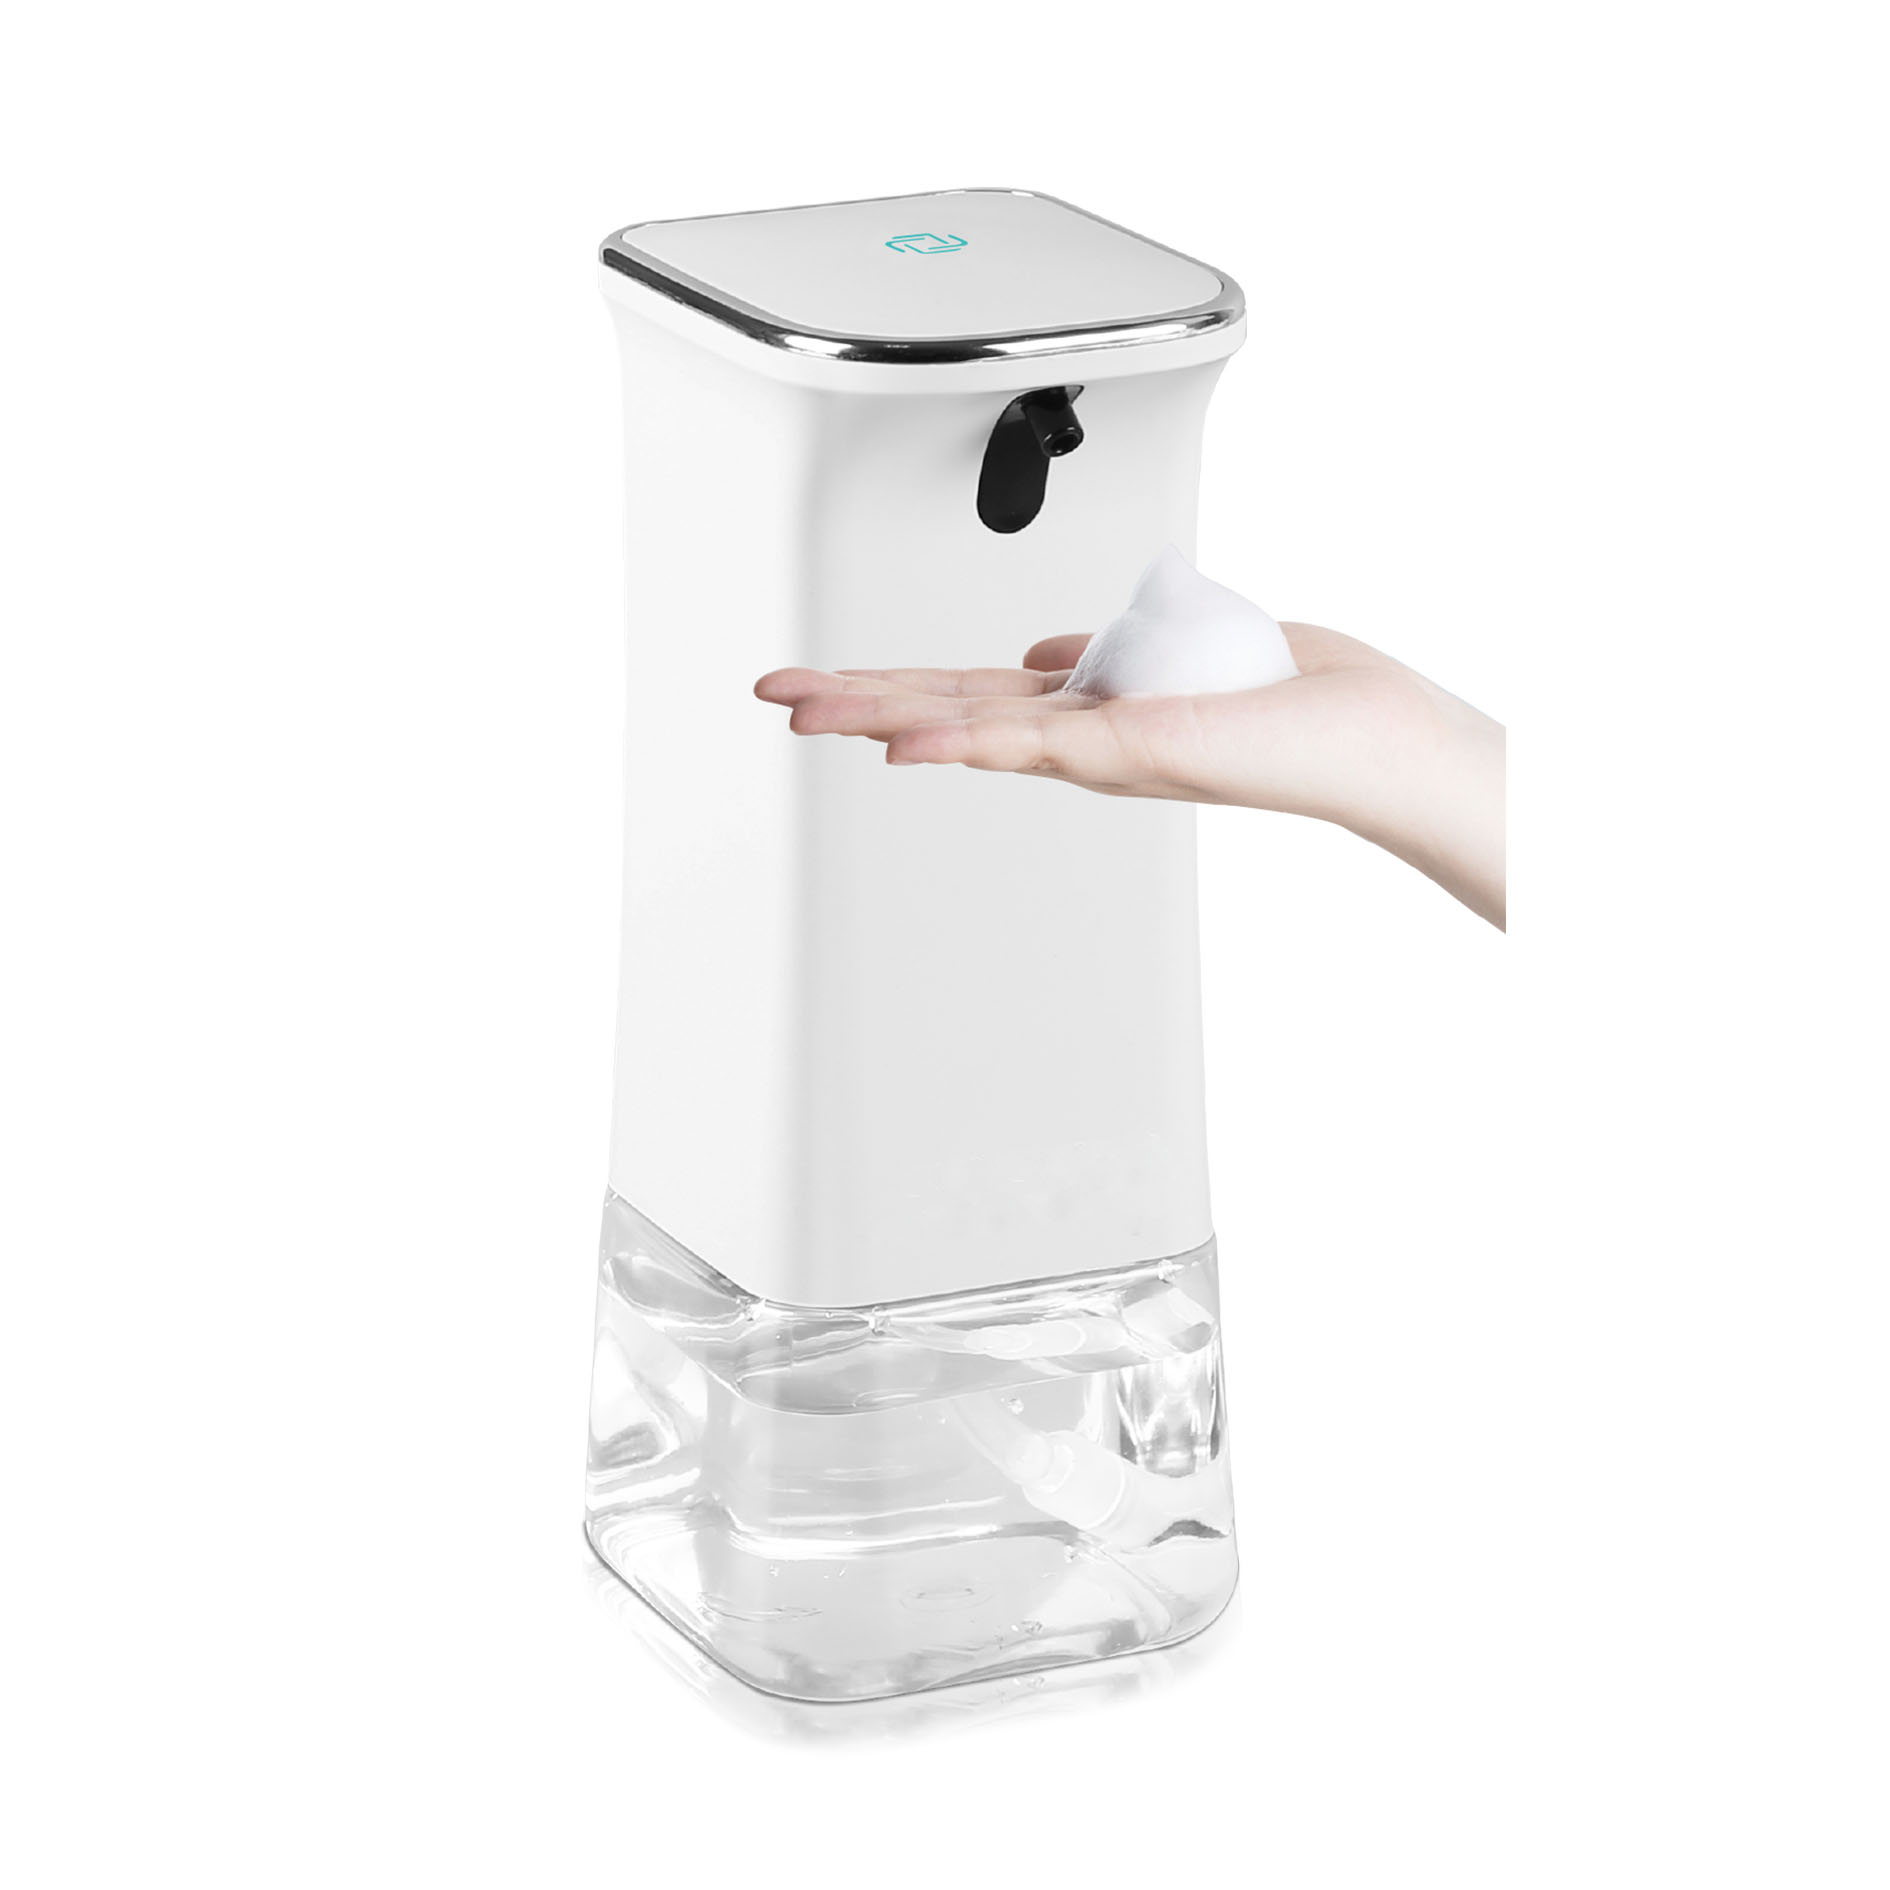 ABS-Plastic-Auto-Hand-Foam-Soap-Dispenser-Classic-Touchless-Soap-Dispenser-MSH-001